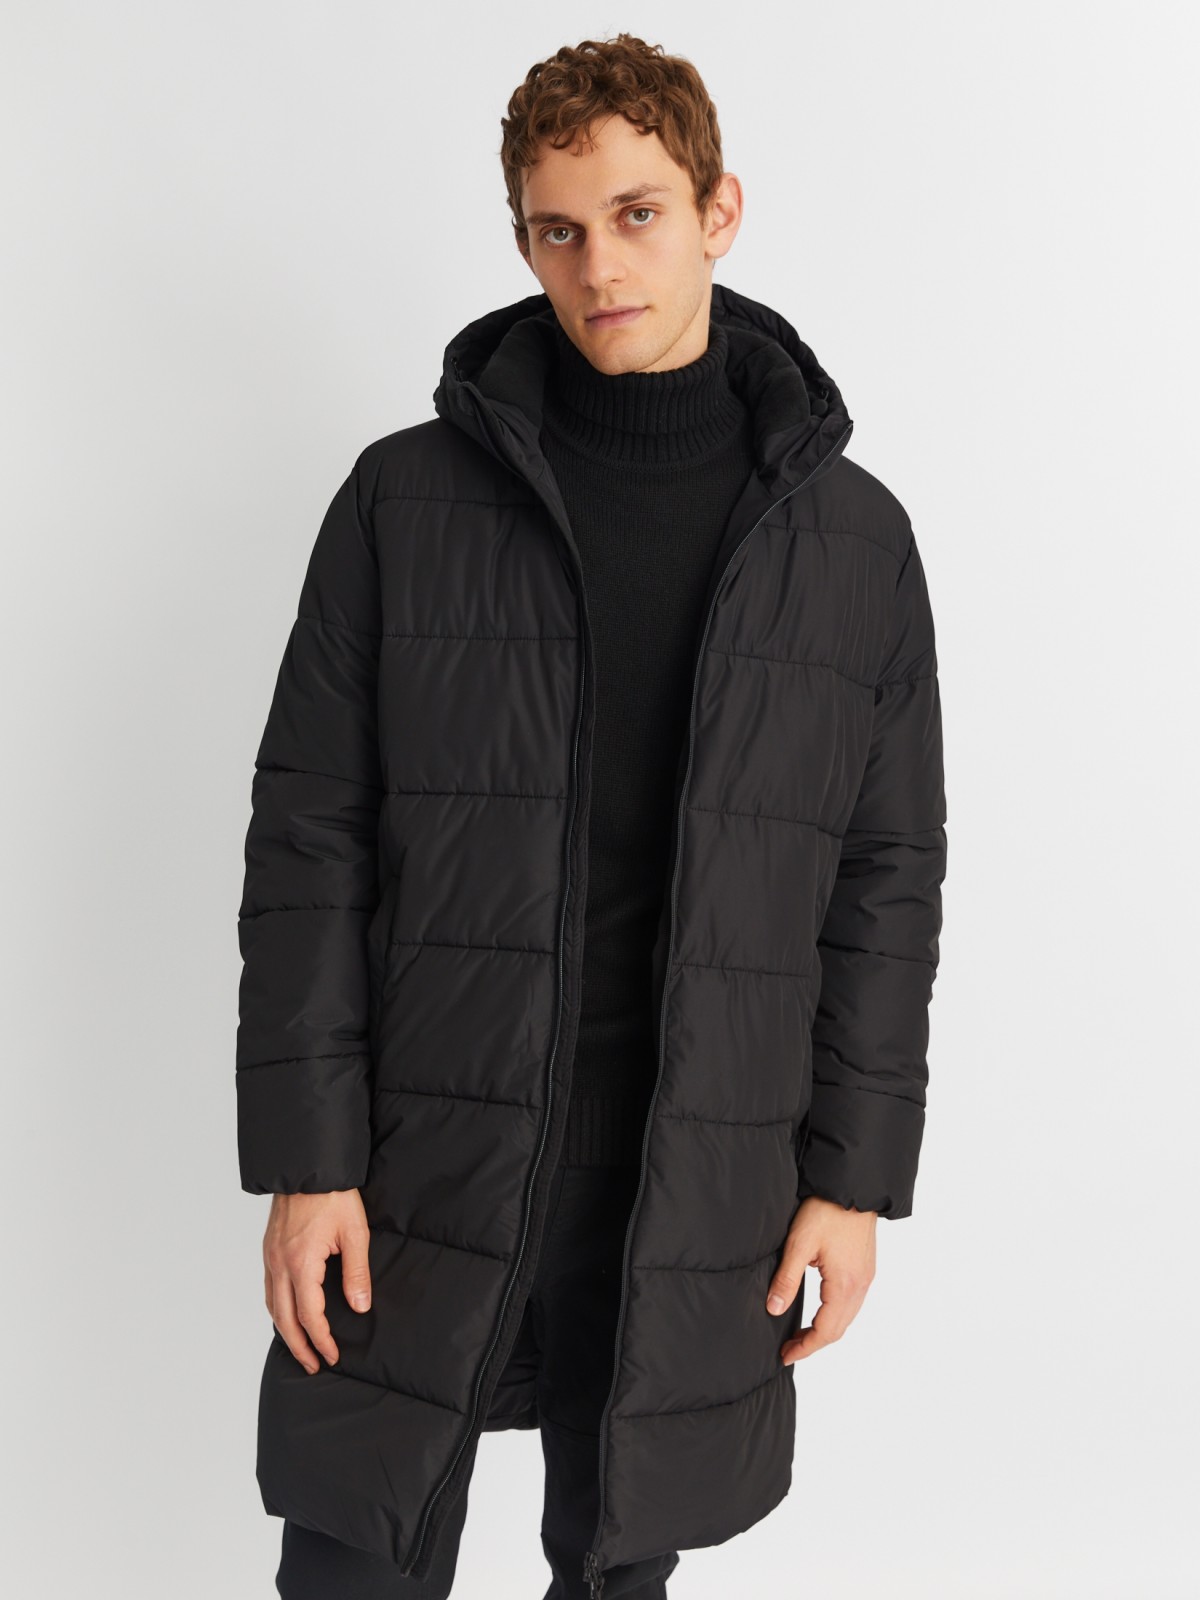 Тёплая стёганая куртка удлинённого силуэта с капюшоном zolla 01342522J064, цвет черный, размер M - фото 1